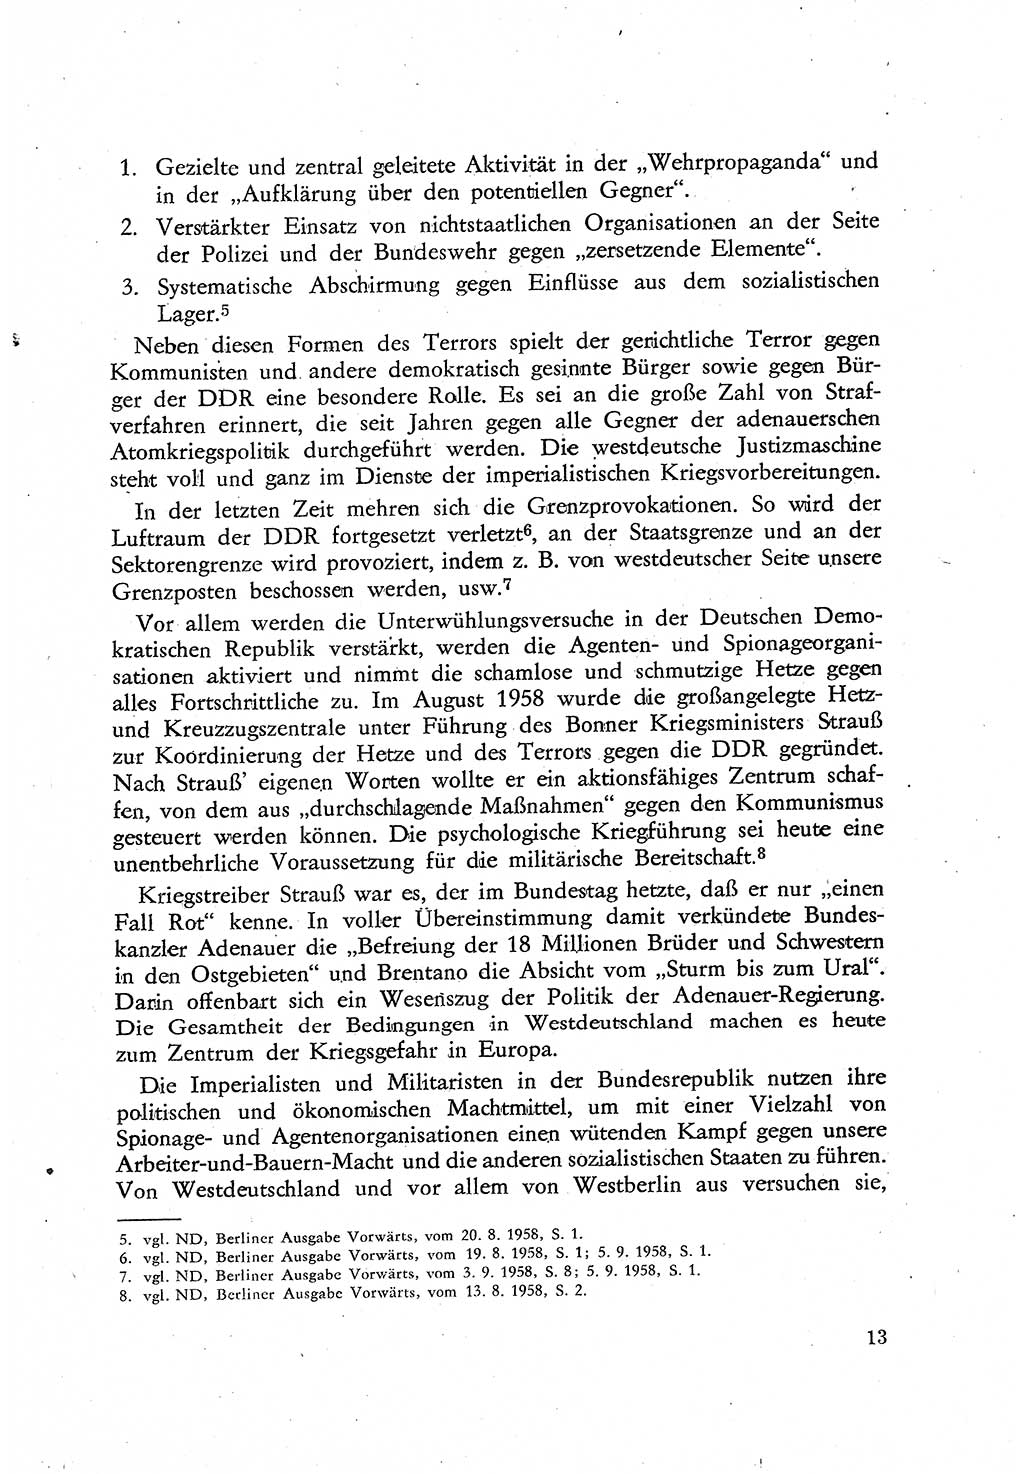 Beiträge zum Strafrecht [Deutsche Demokratische Republik (DDR)], Staatsverbrechen 1959, Seite 13 (Beitr. Strafr. DDR St.-Verbr. 1959, S. 13)